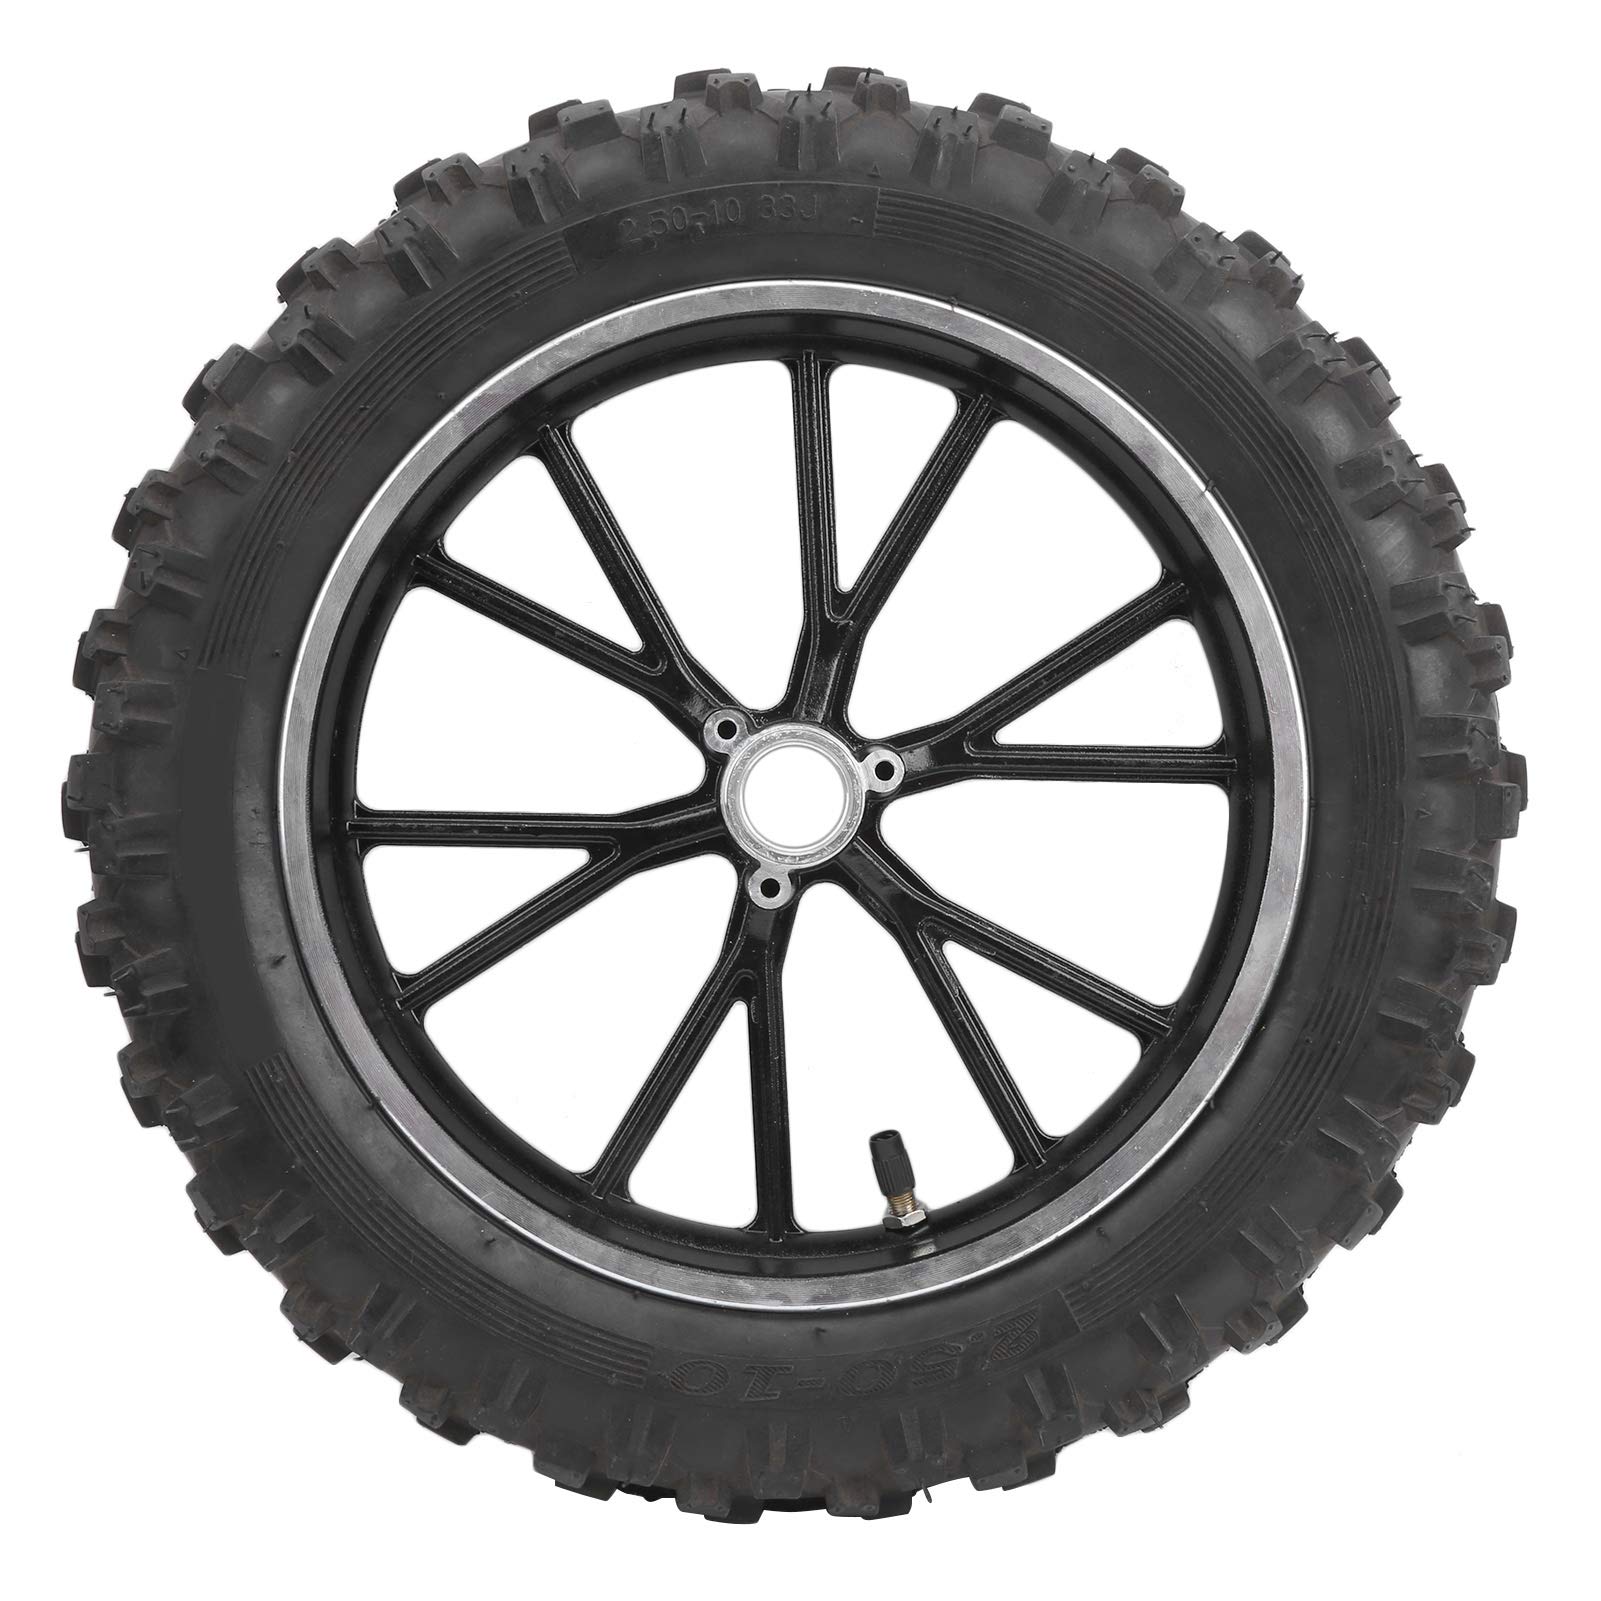 Akozon 10 Zoll Reifen Autoreifen 60/100 10 Reifen Felge Anti Rutsch Reifen Gummireifen Vollreifen Ersatzreifen für PIT PRO Trail Dirt Bike Thumpstar von Akozon